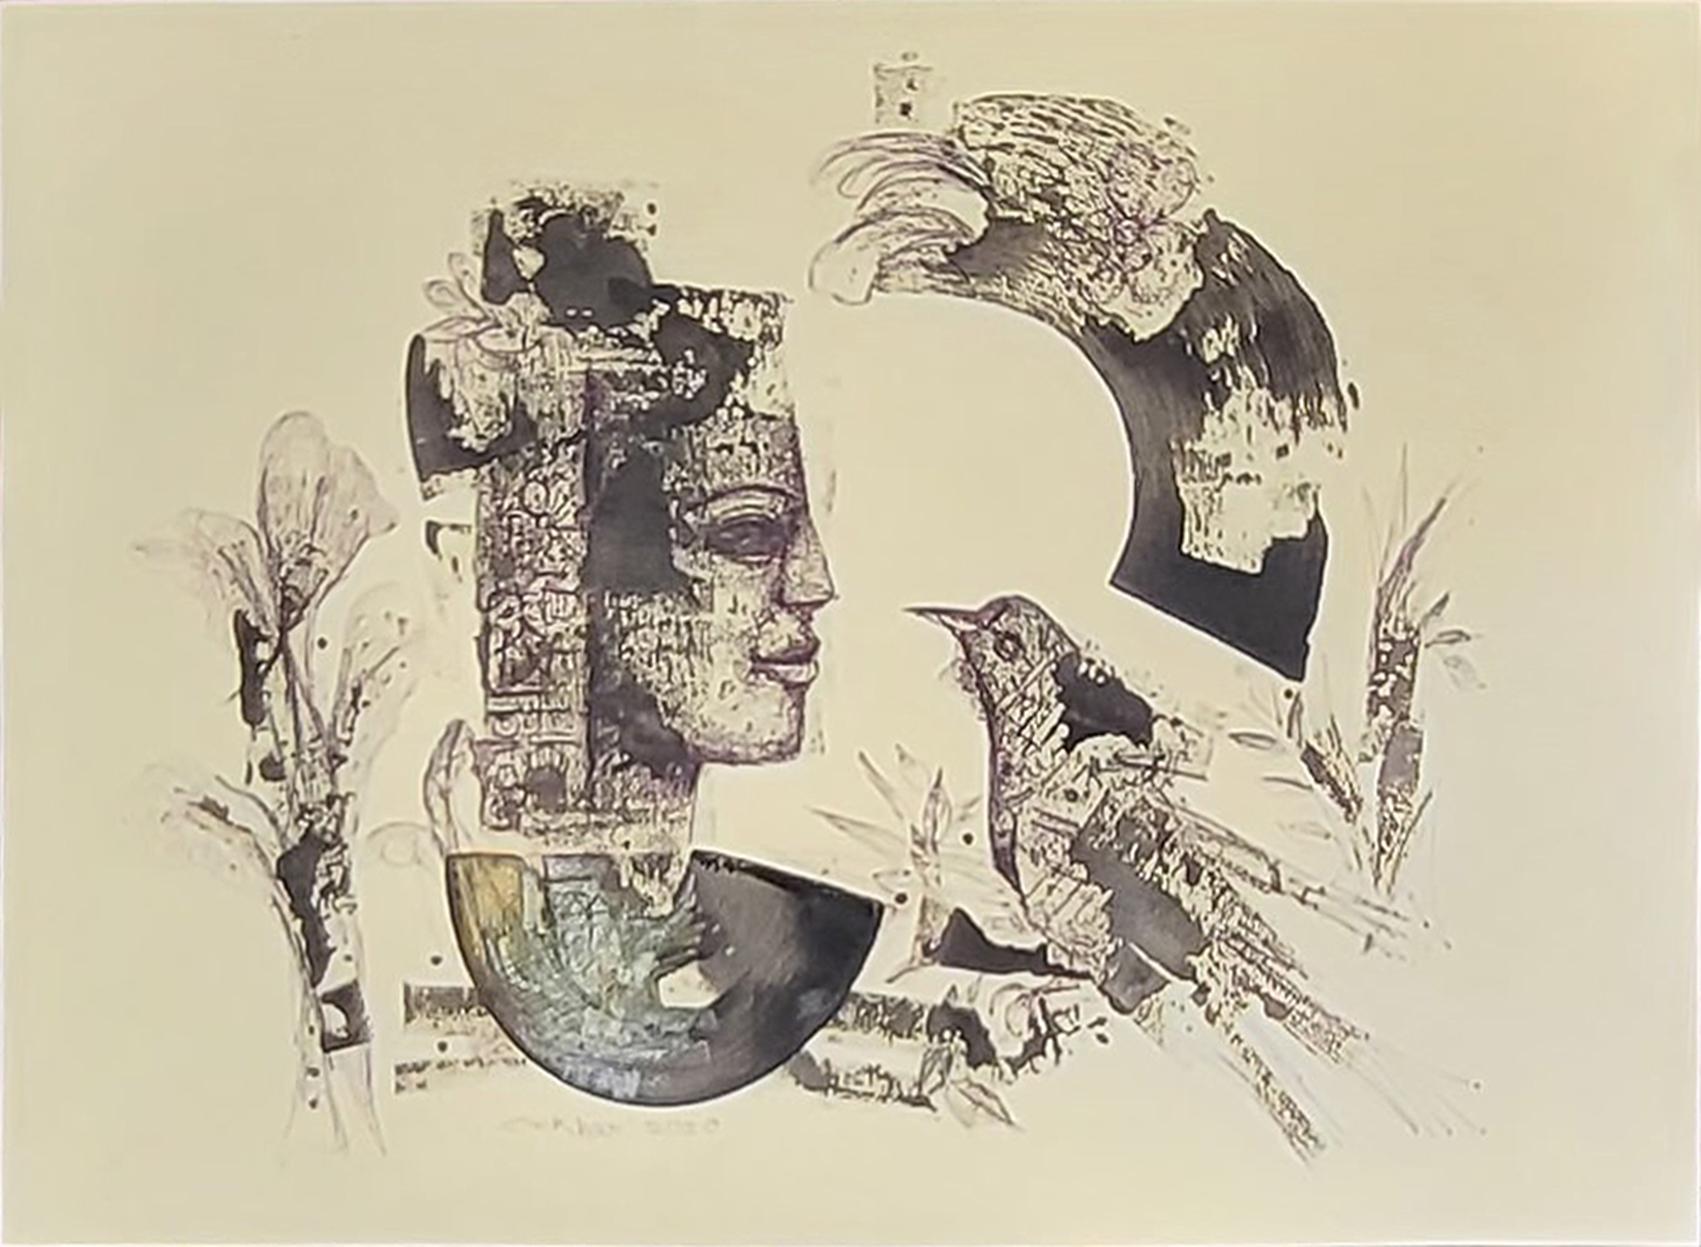 Figurative Painting Sekhar Kar - Sans titre, technique mixte sur papier, artiste contemporain indien de couleur noire - en stock